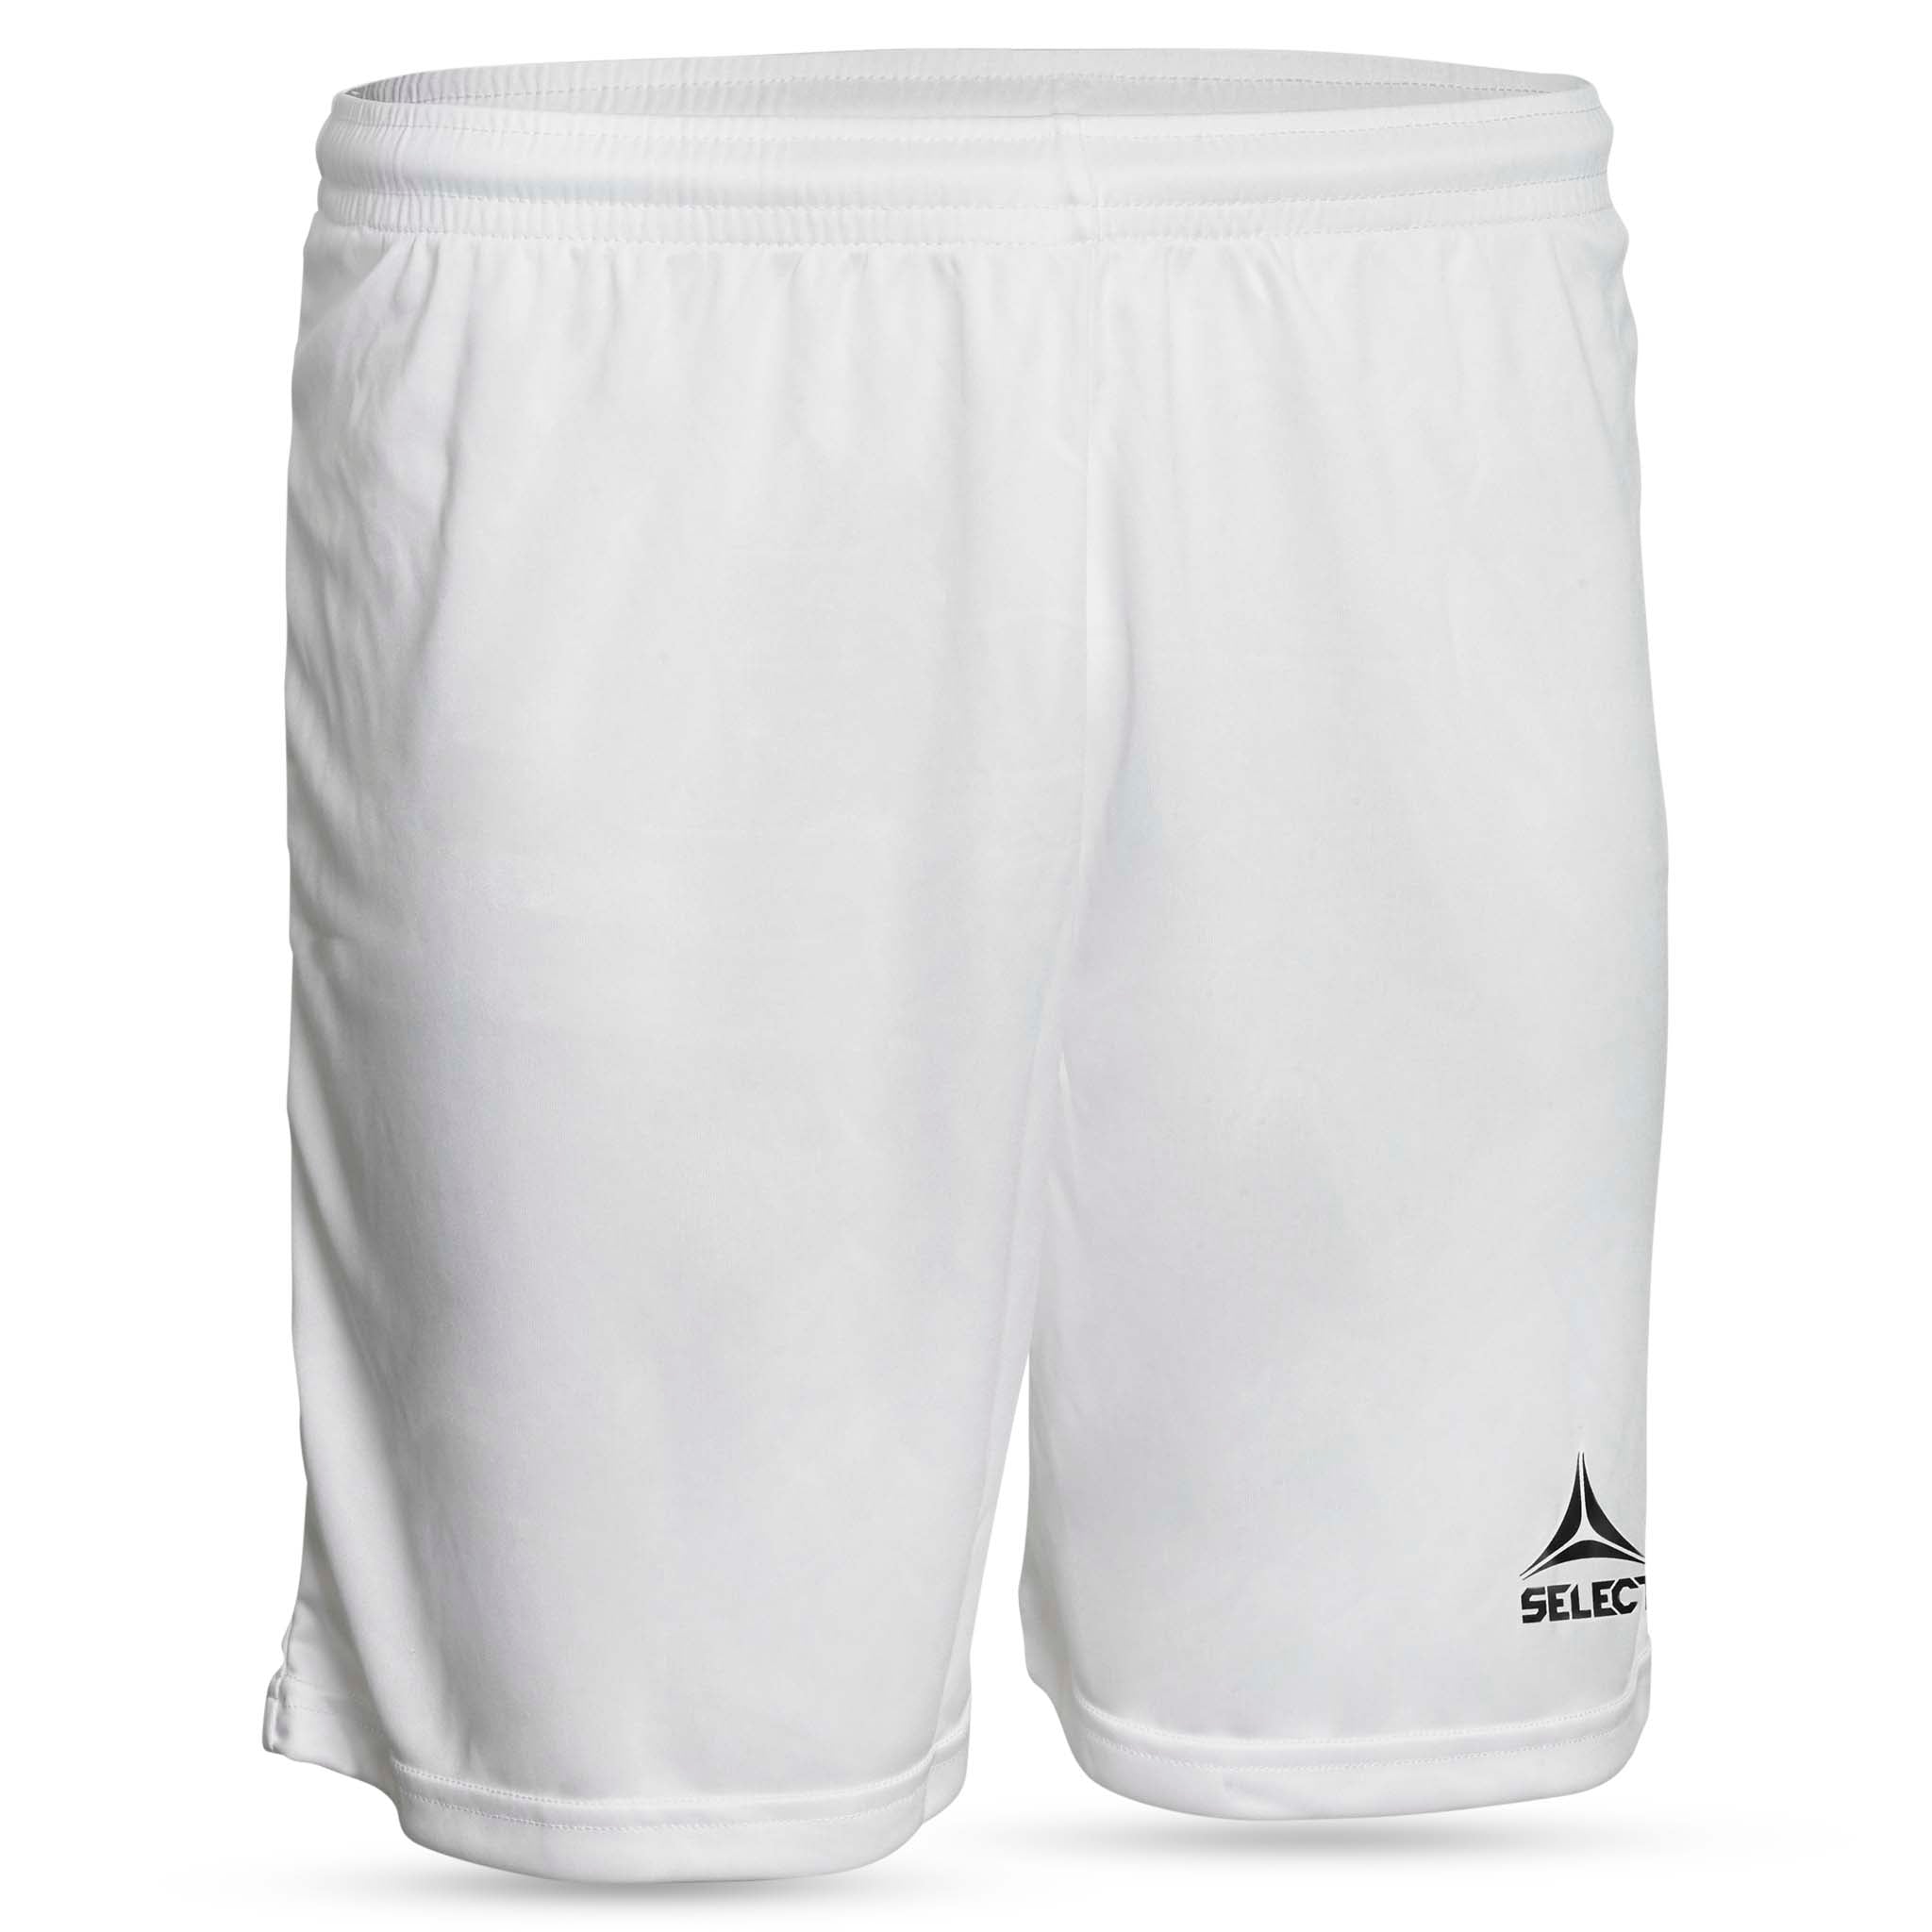 Pisa Player shorts #colour_white